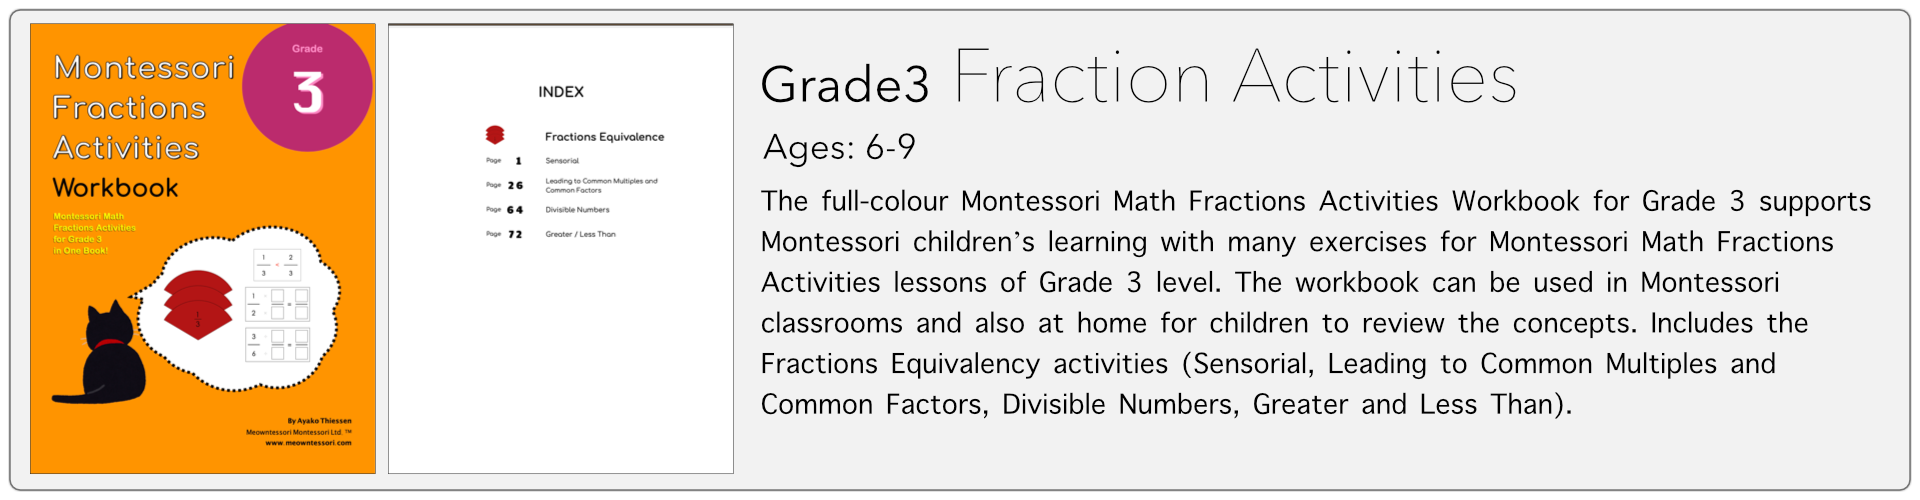 grade3 fraction